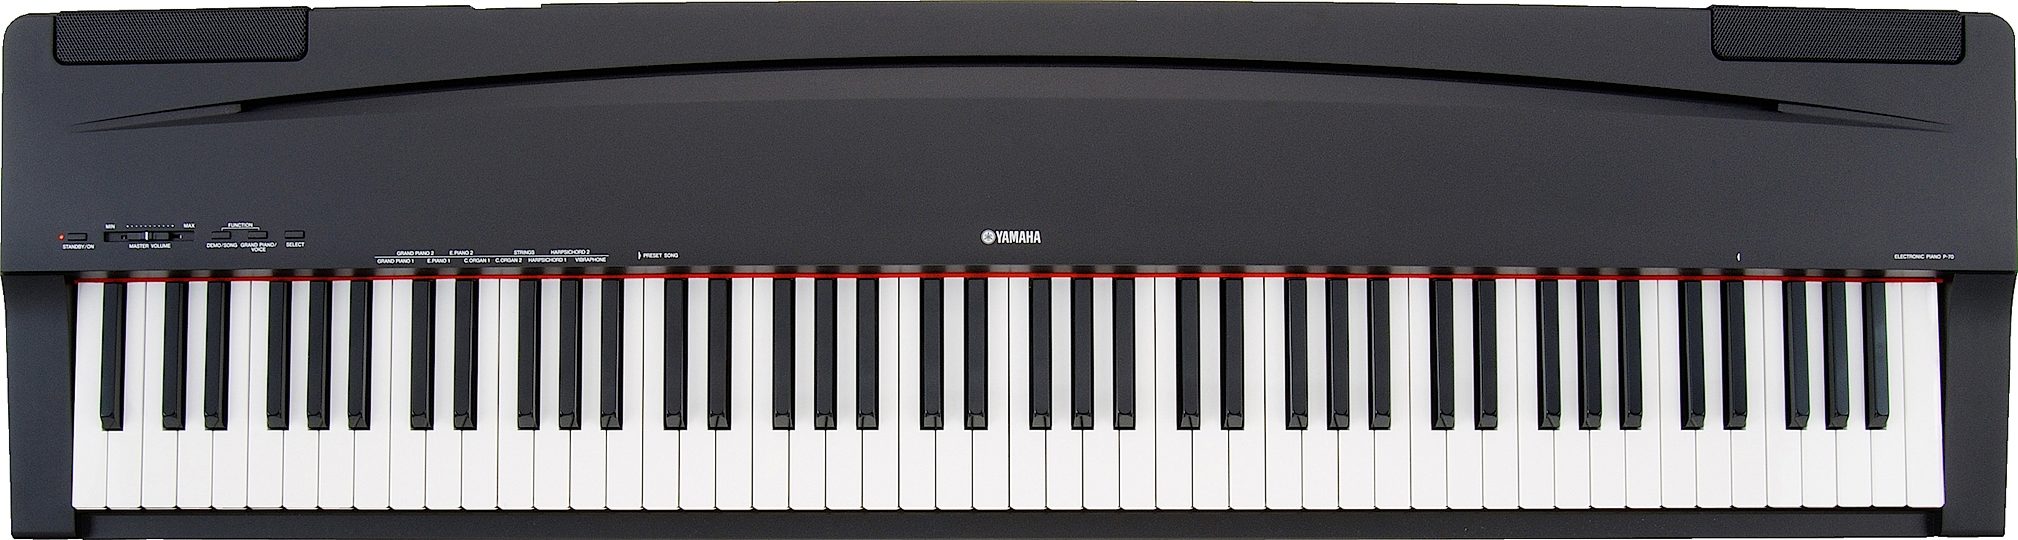 YAMAHA 電子ピアノ P-70 - 電子楽器